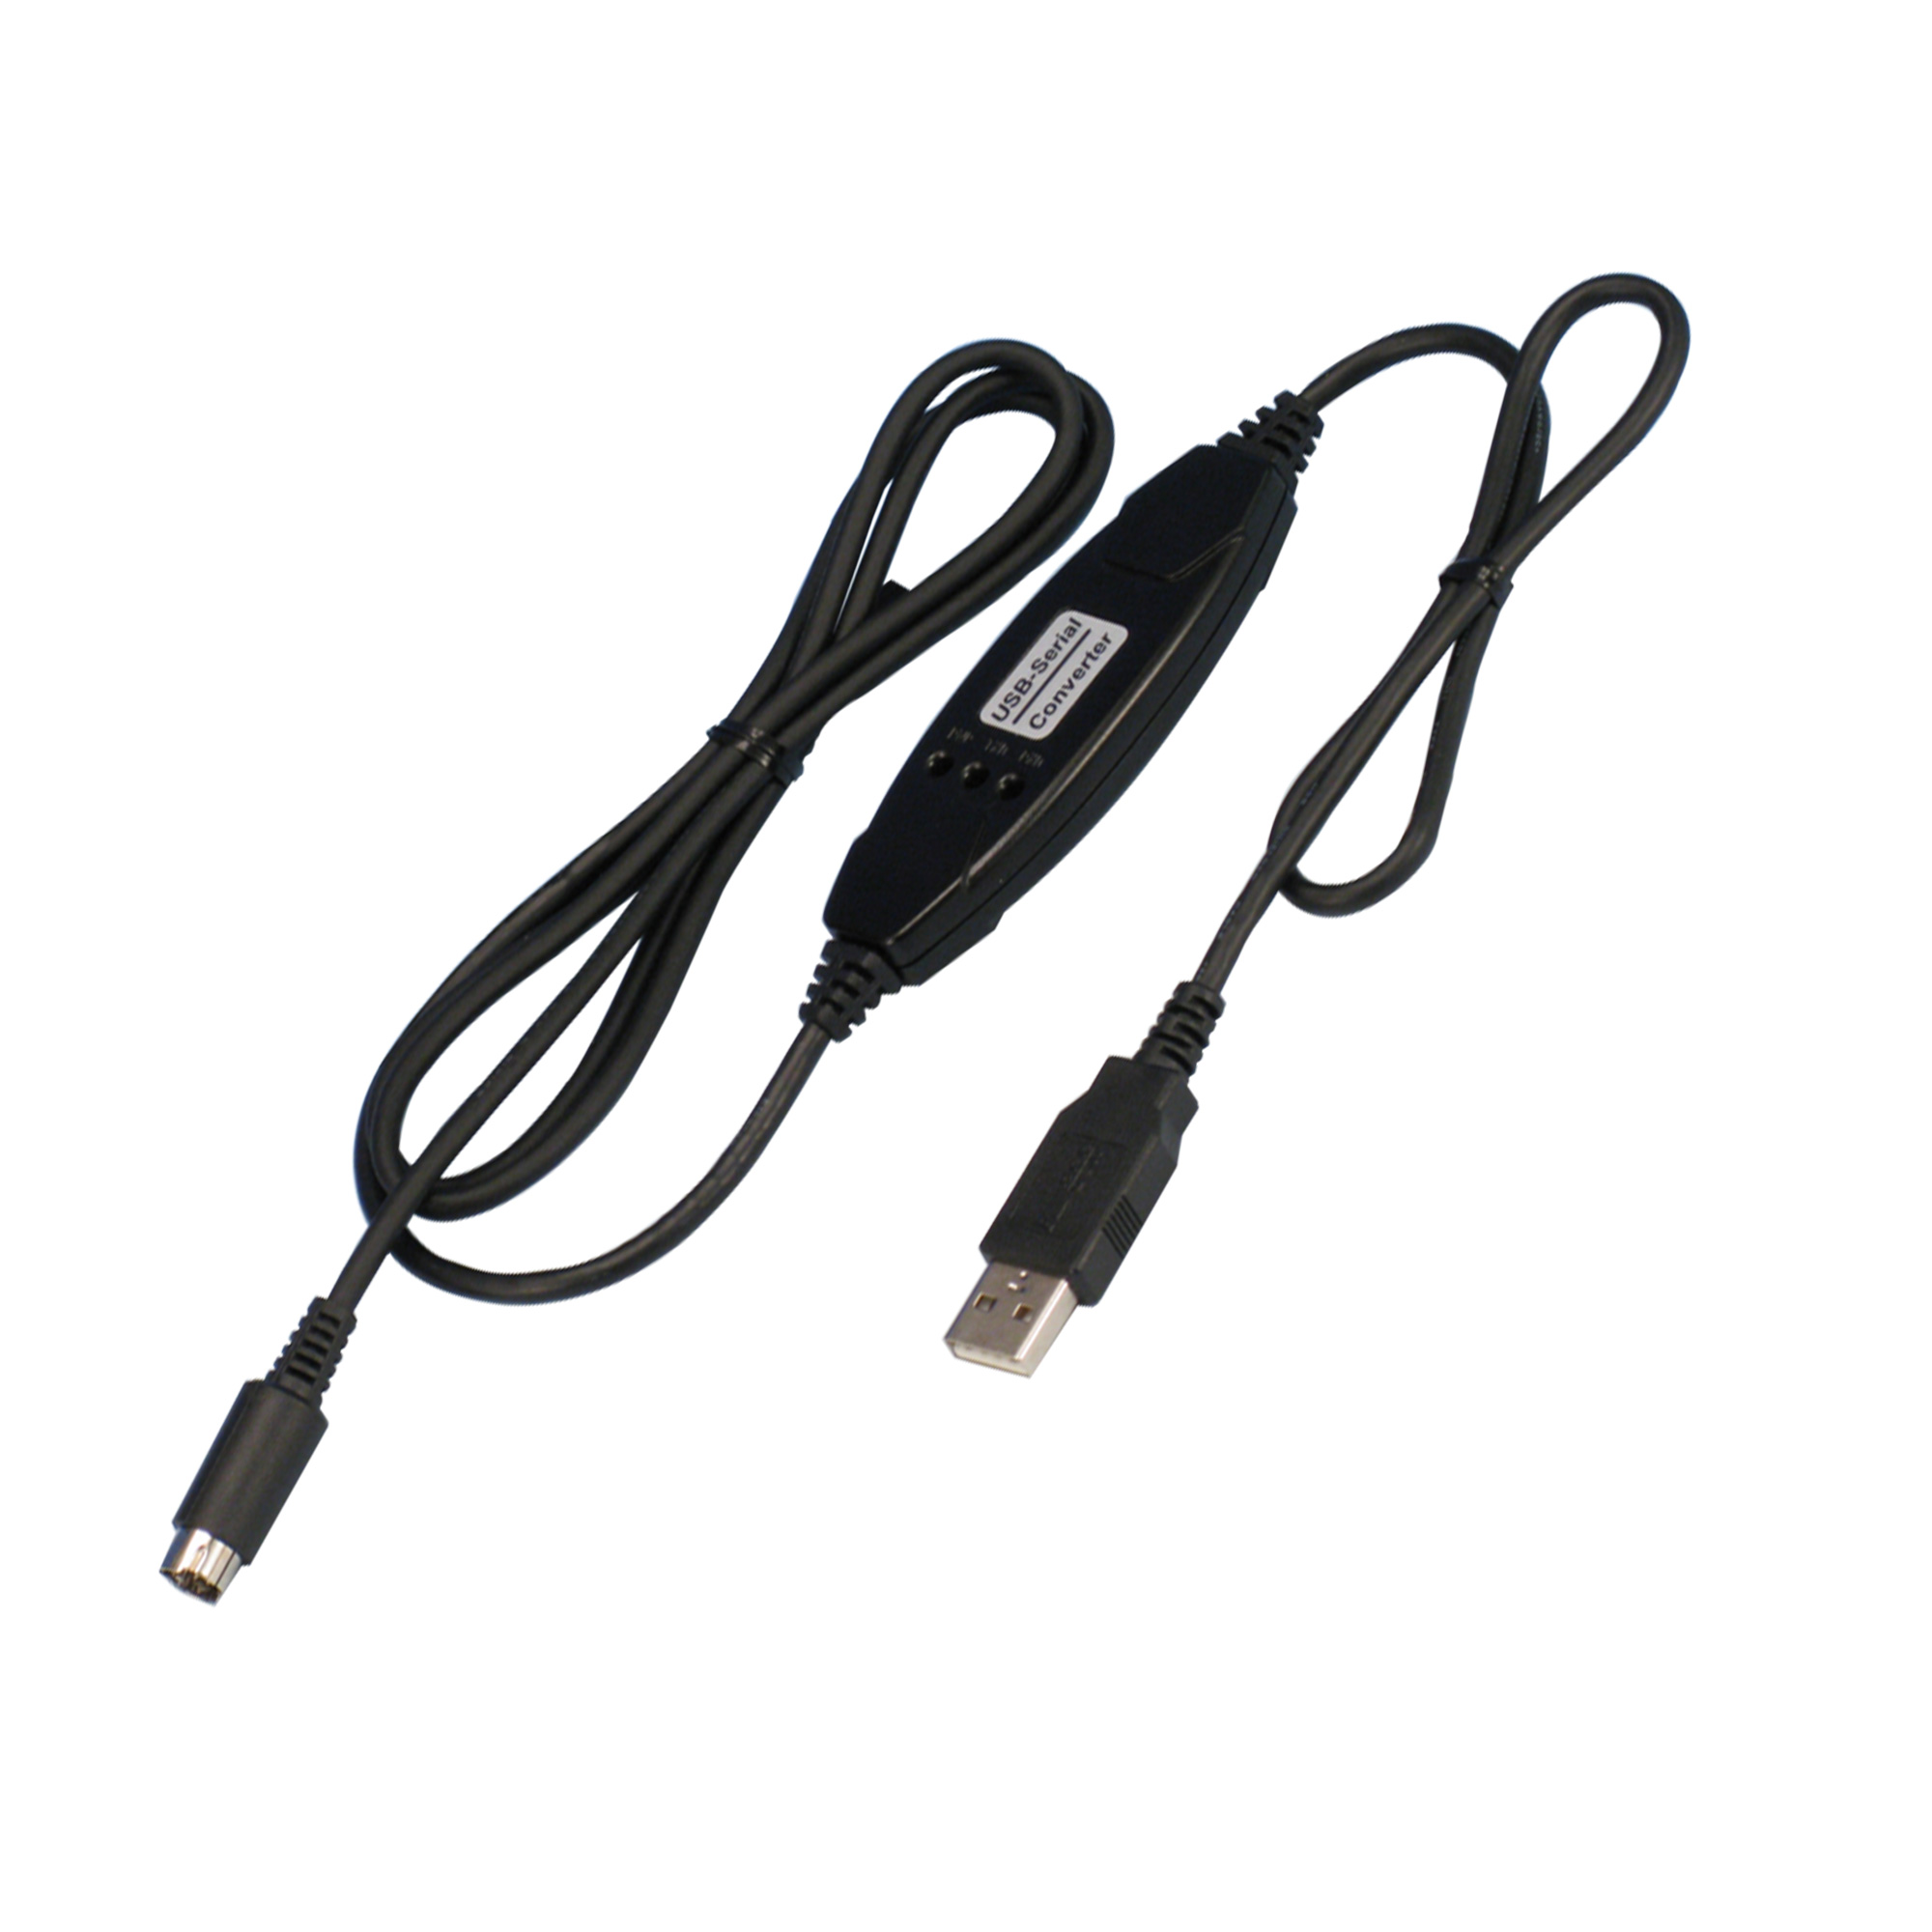 080000-415 ソフト付通信ケーブル S-USB 柴田科学(SIBATA) 印刷